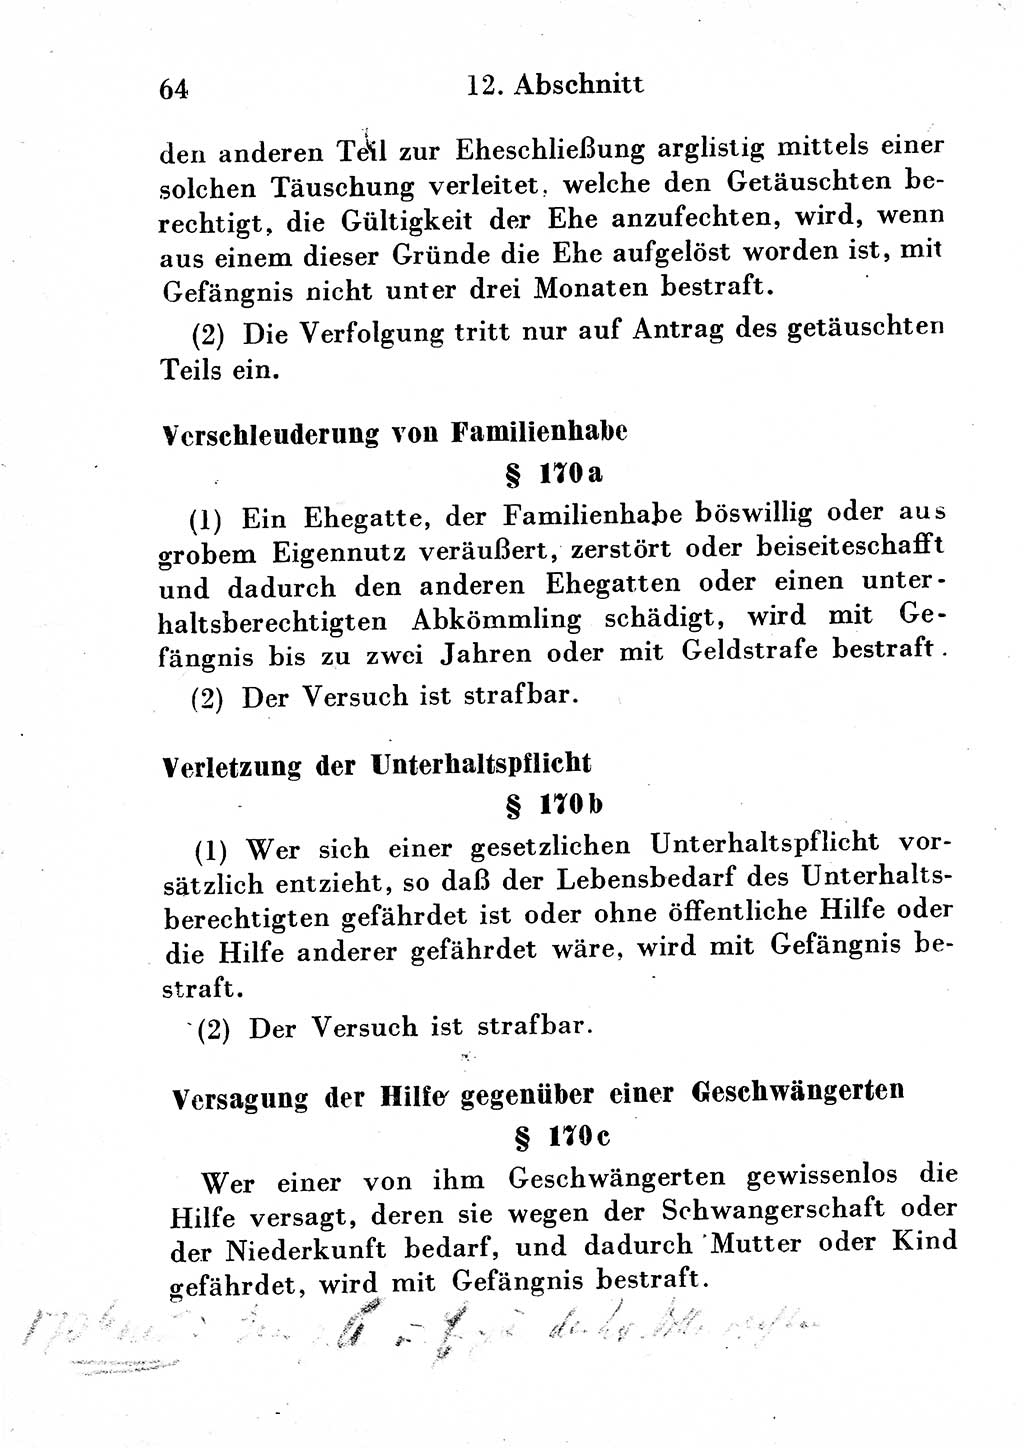 Strafgesetzbuch (StGB) und andere Strafgesetze [Deutsche Demokratische Republik (DDR)] 1954, Seite 64 (StGB Strafges. DDR 1954, S. 64)